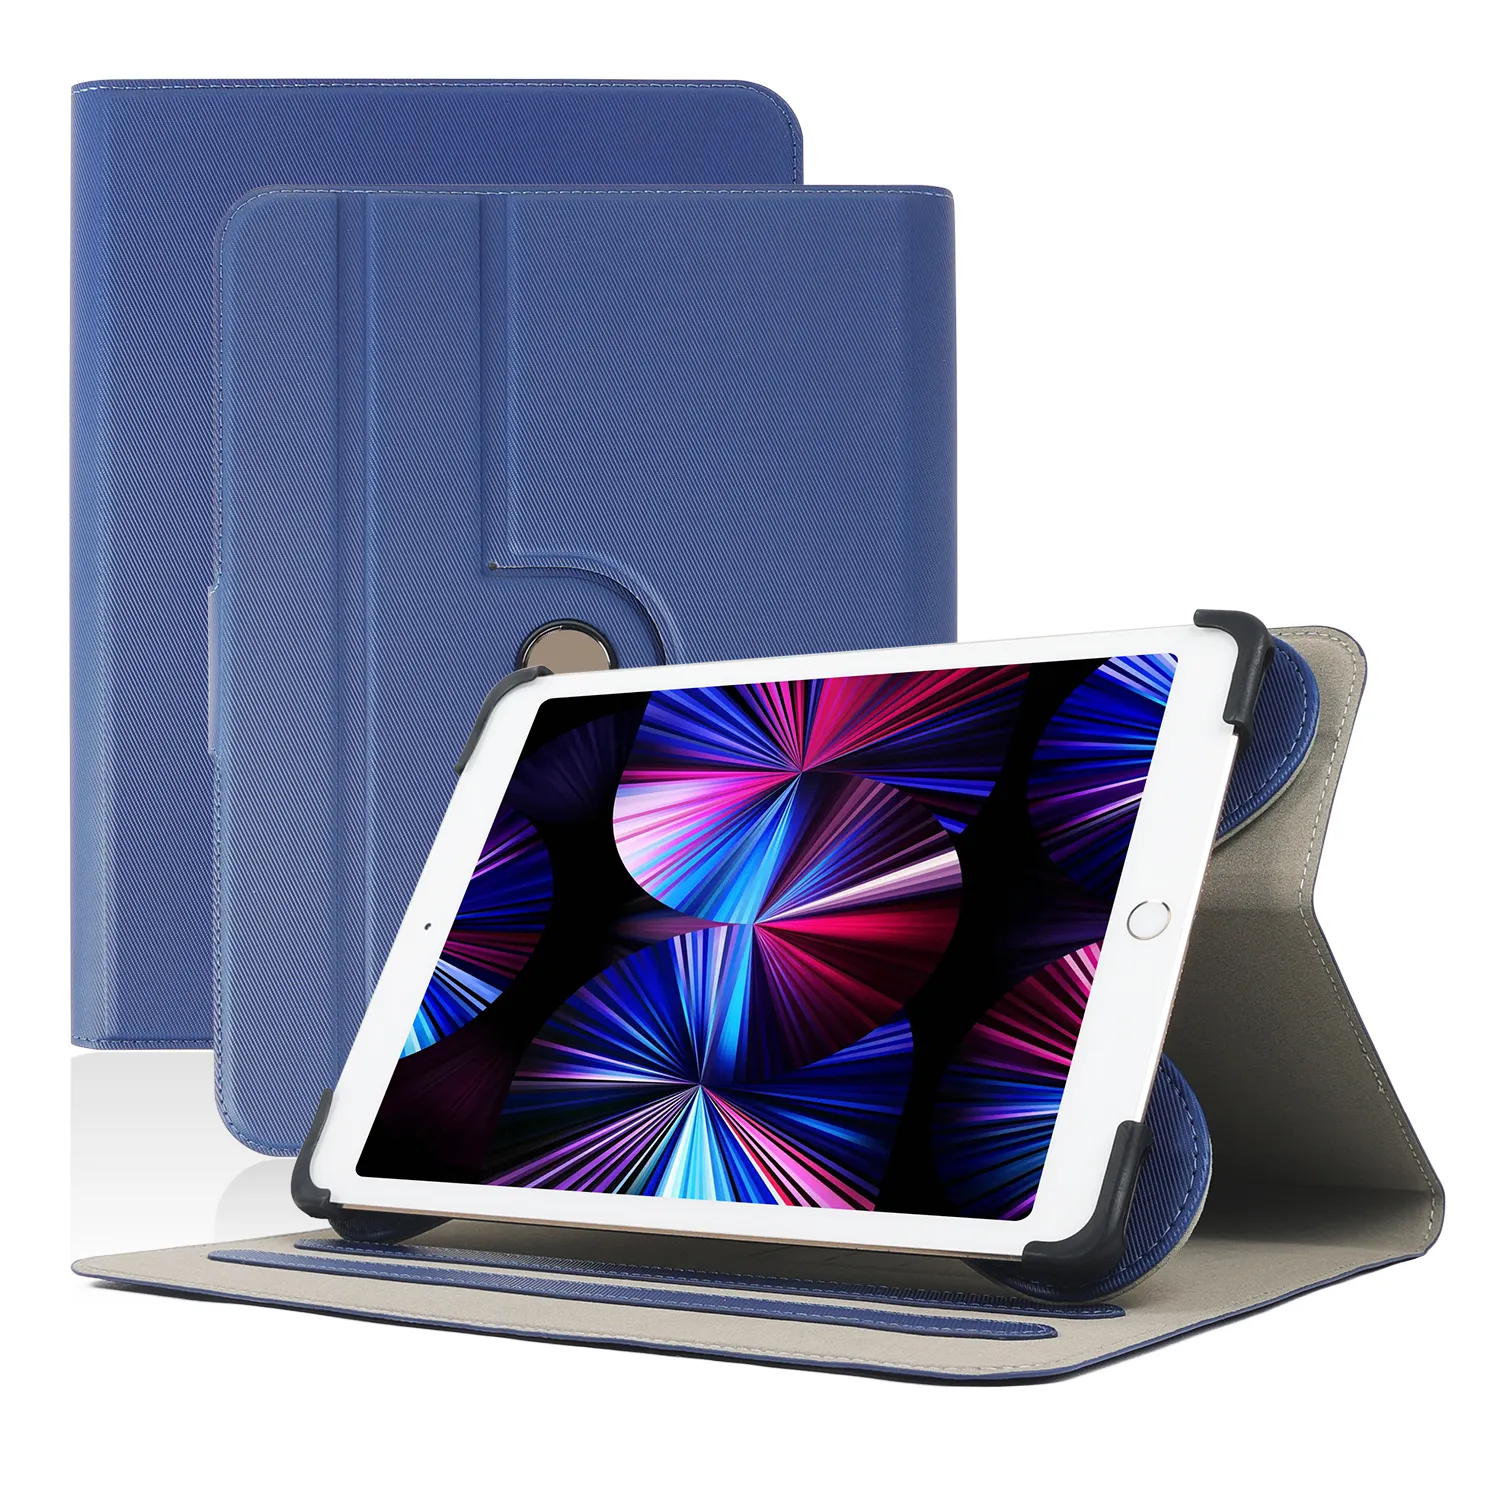 Universelle rotierende Ständer halter Tablet Cover Hülle für iPad, Kinder Tablet Flip Cover iPad Hüllen Leder für Kinder Cover Hülle